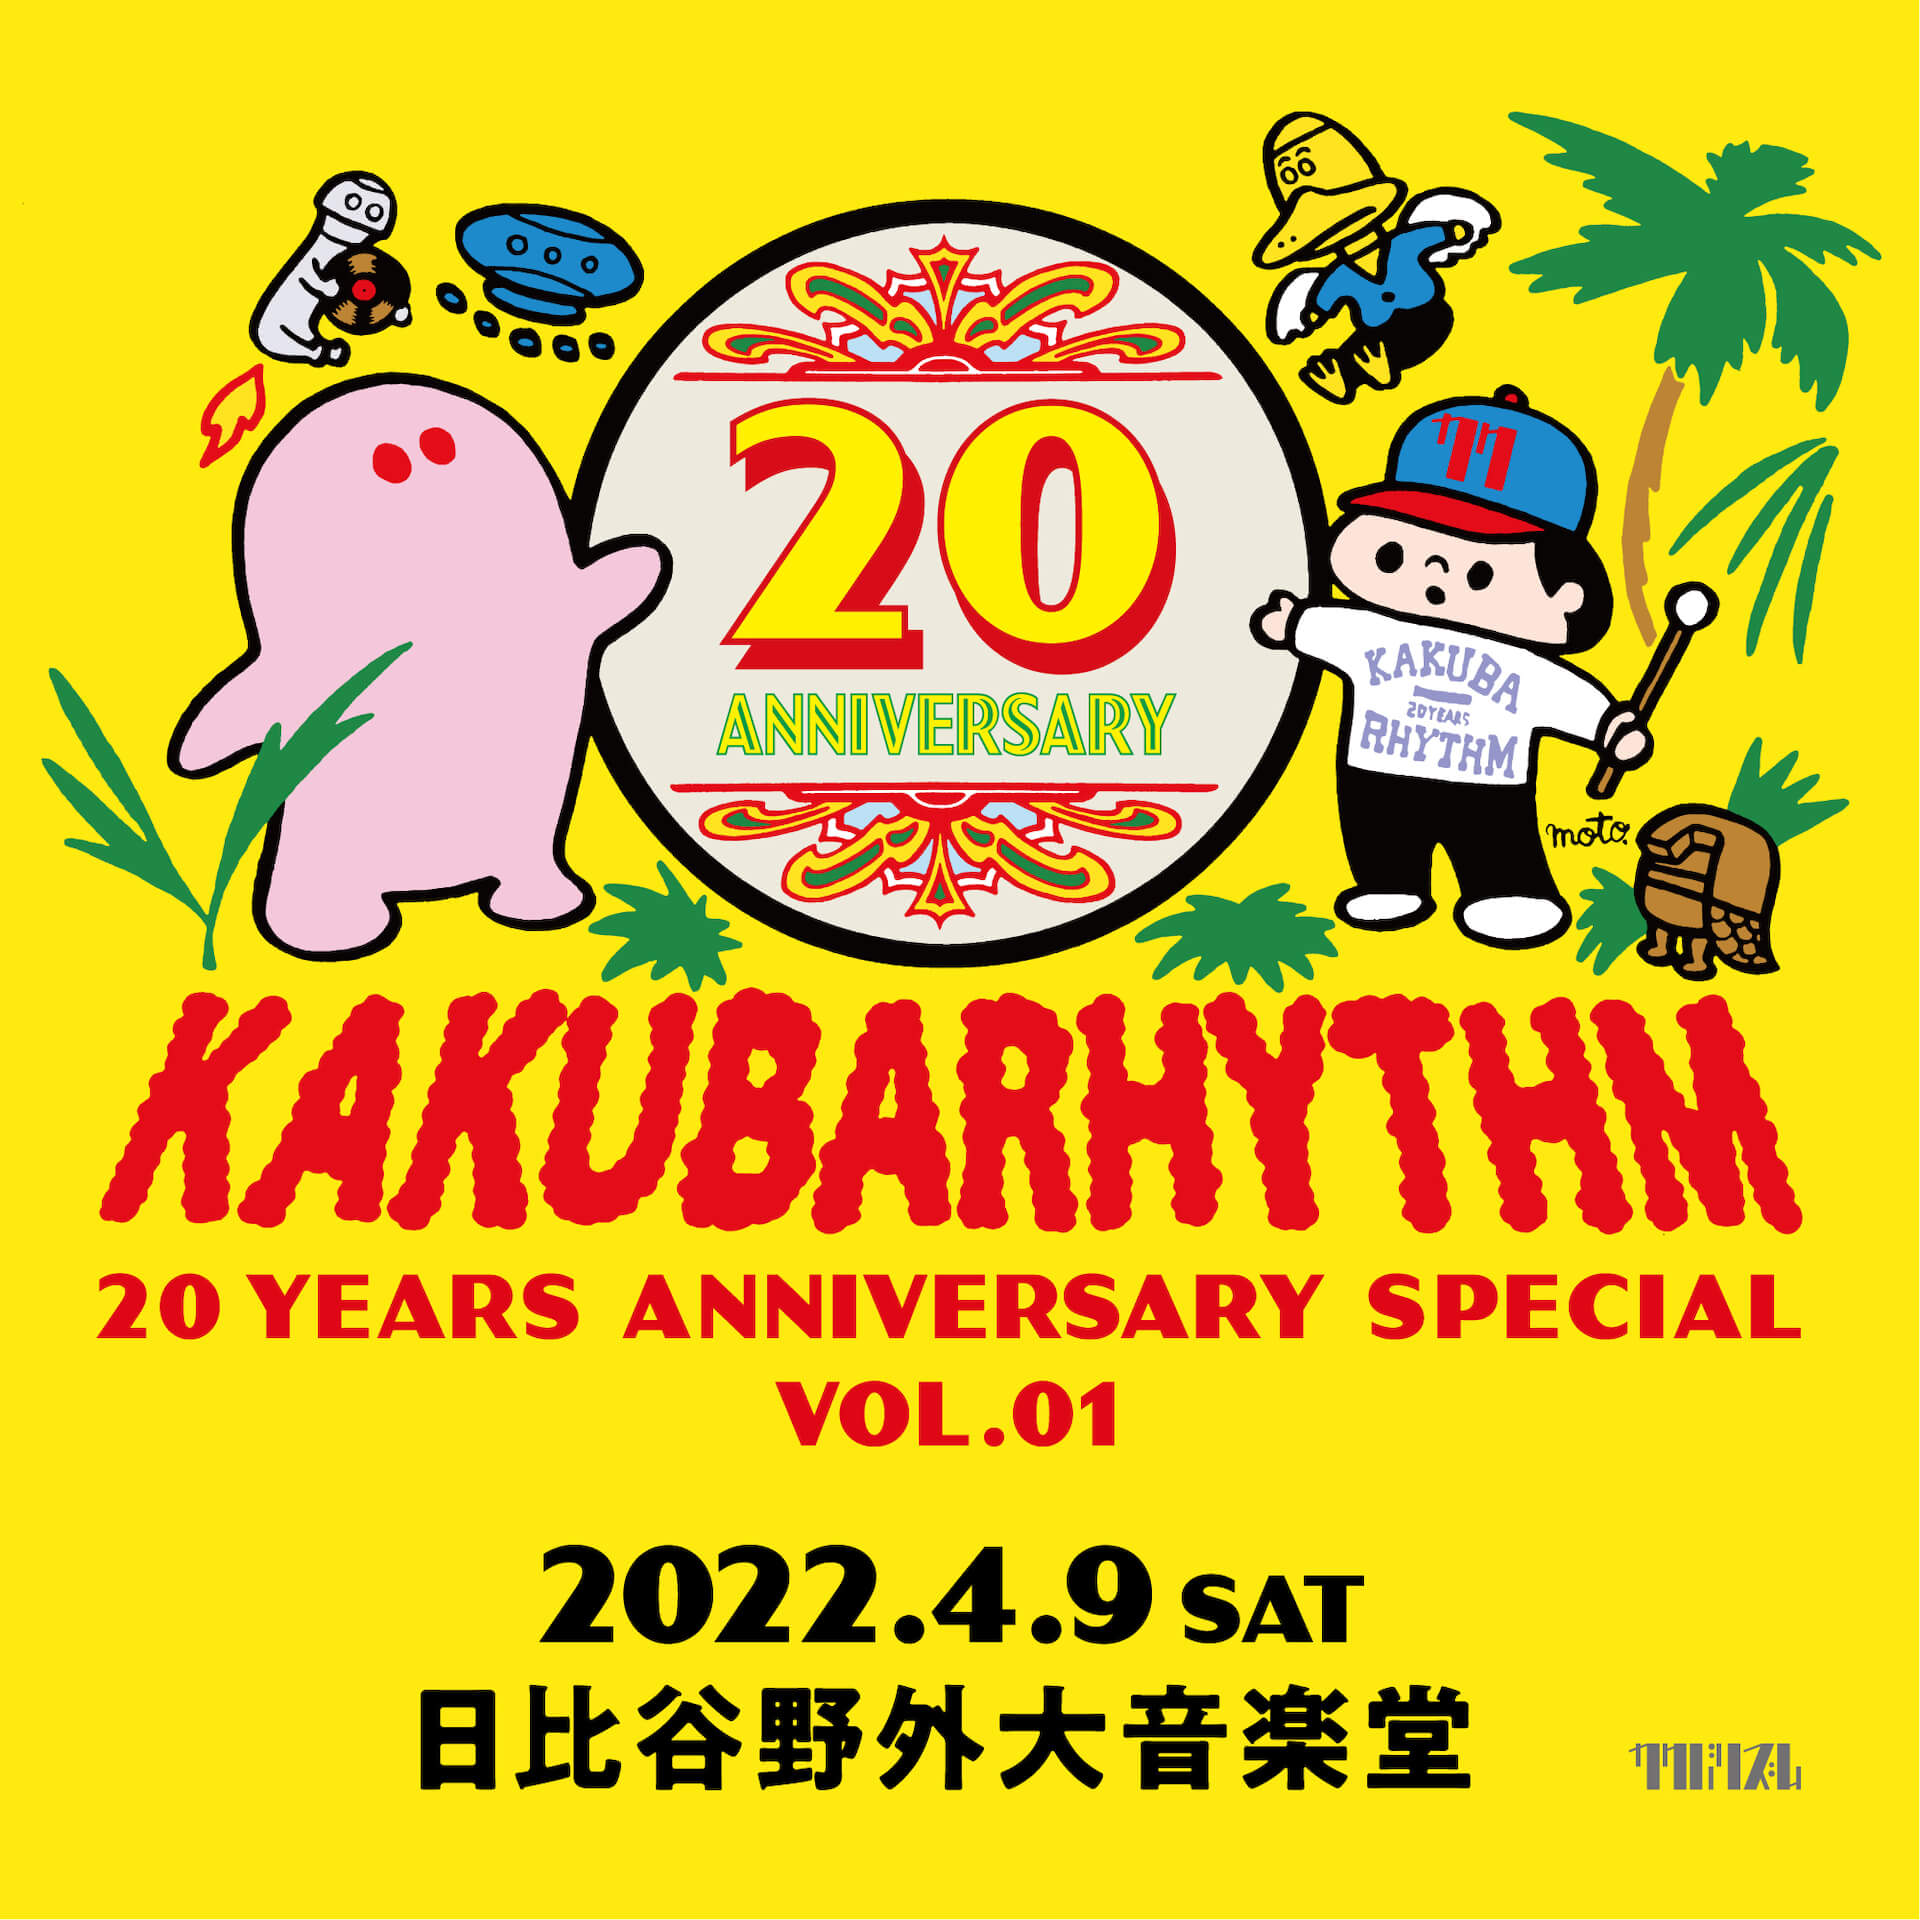 カクバリズムが20周年記念公演を開催！YOUR SONG IS GOOD、cero、在日ファンクらレーベルアーティストが出演 music220208_kakubarhythm-03